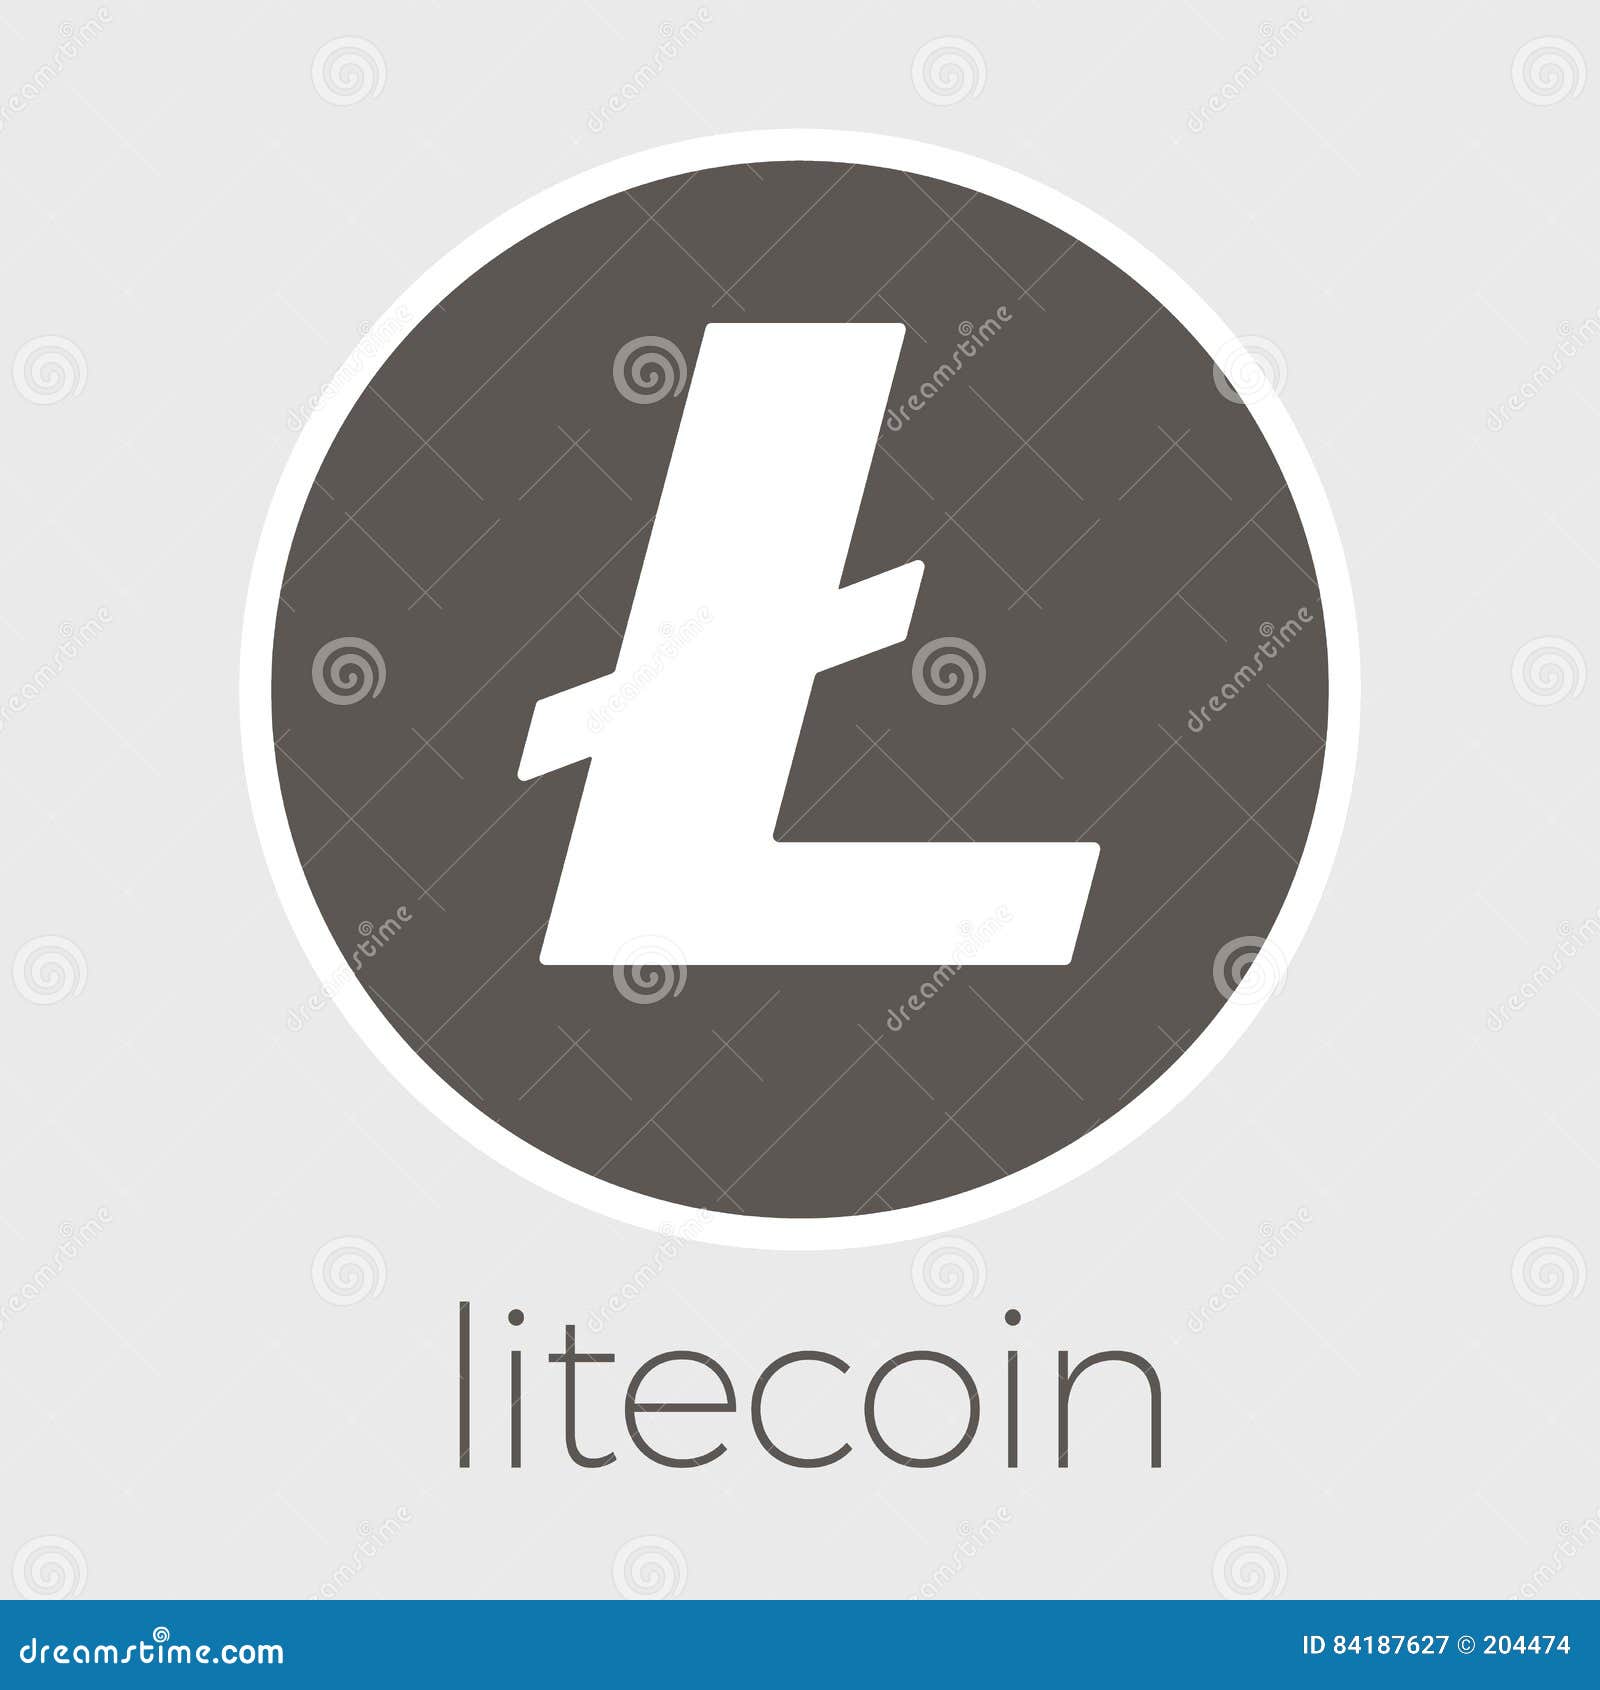 litecoin explained